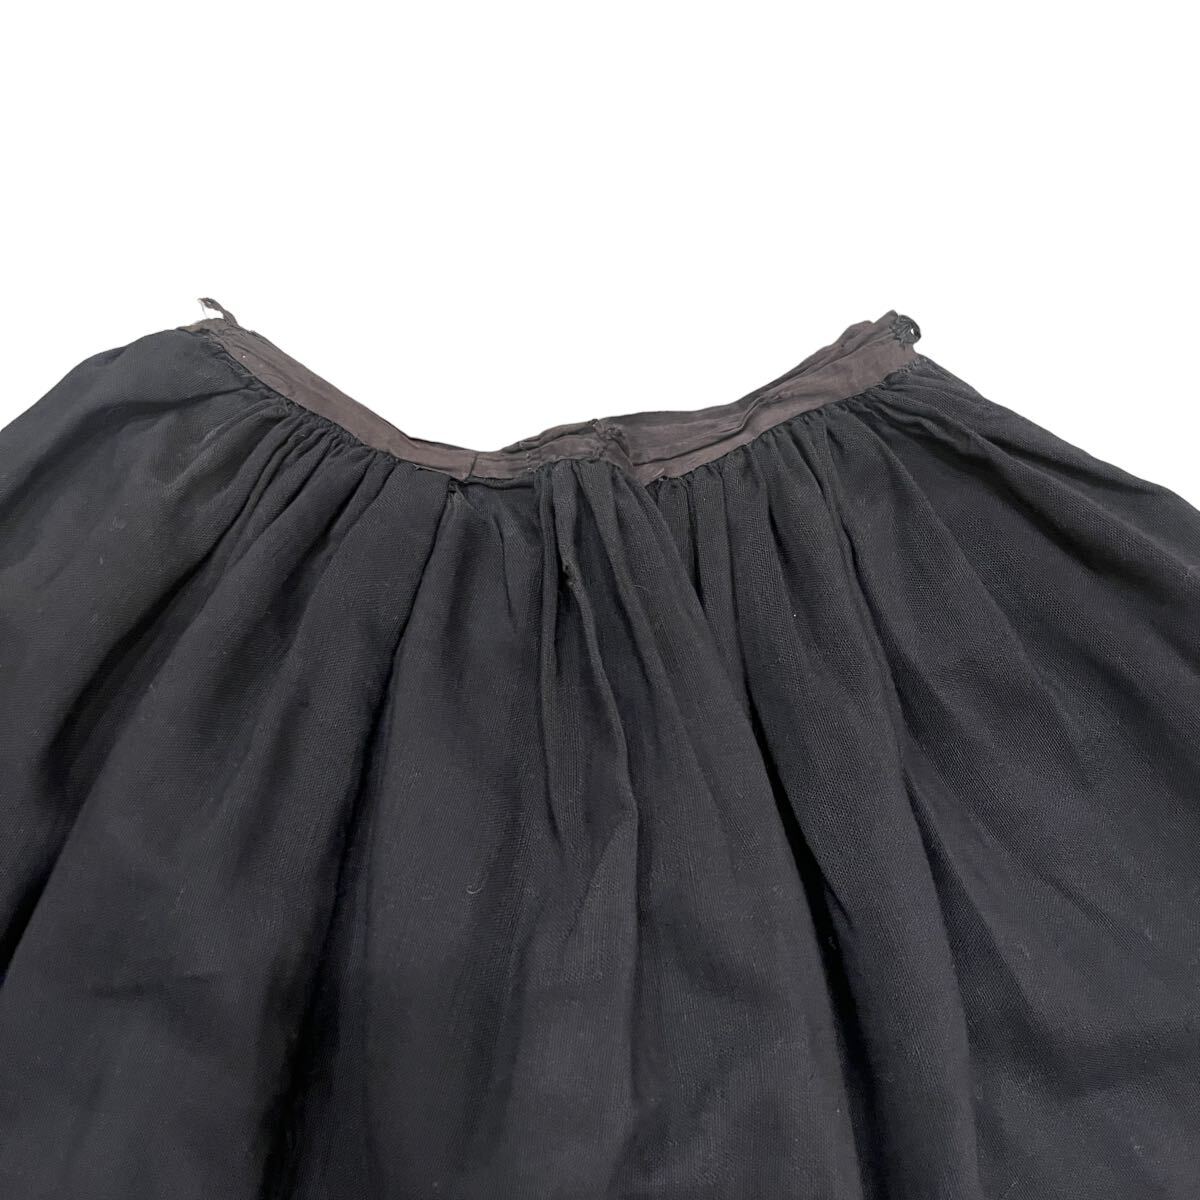 アンティーク スカート スイムウェア bathing skirt 20’s 30’s vintage 20年代 30年代 古着の画像2